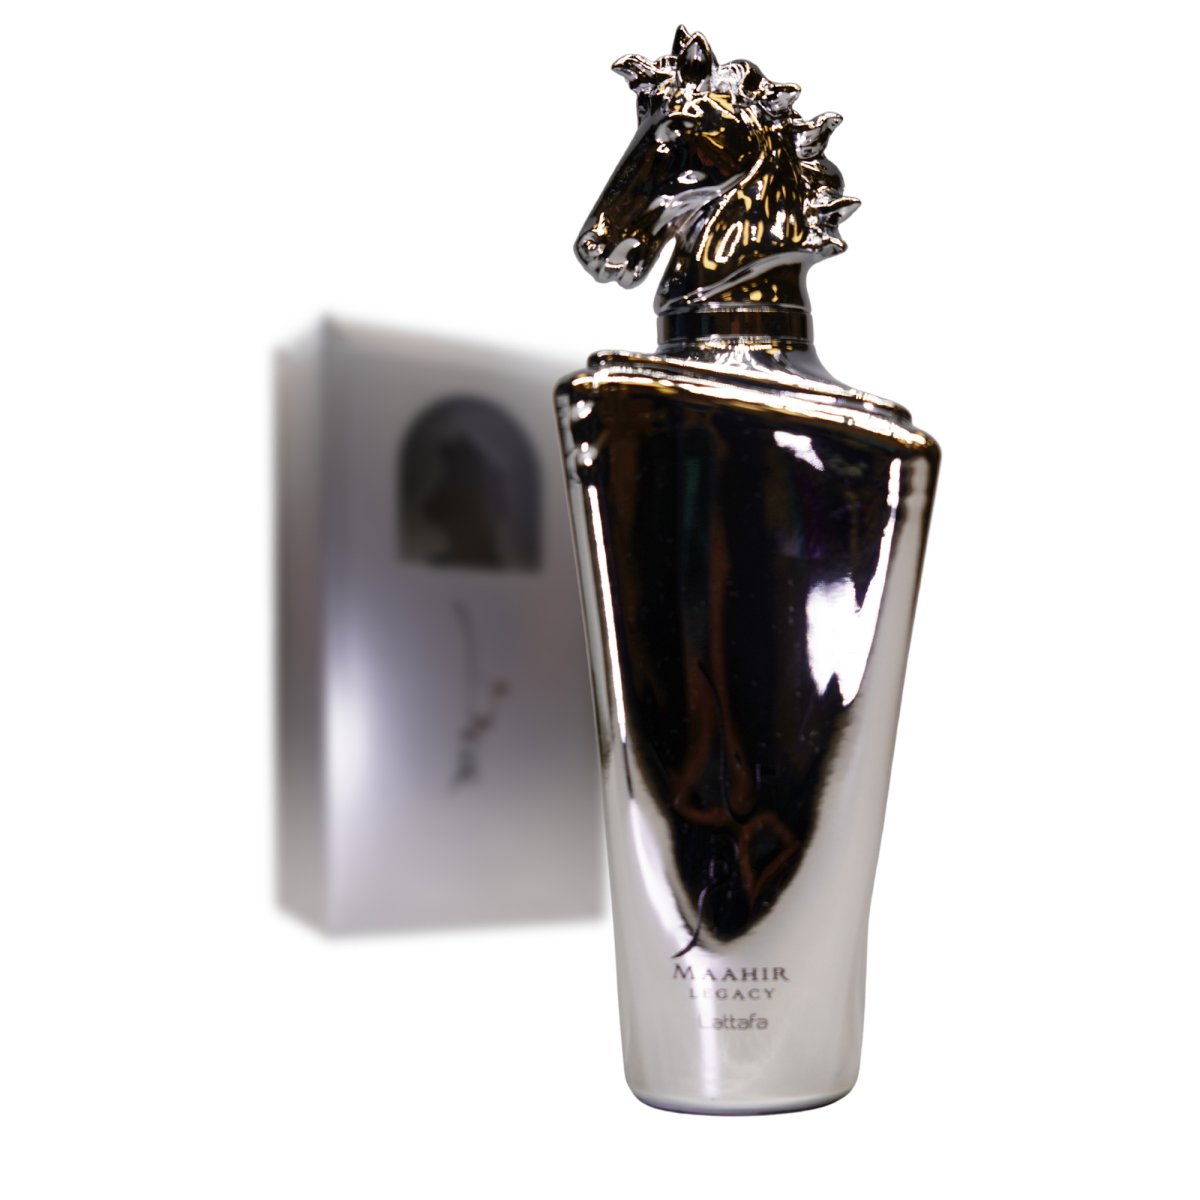 Lattafa Maahir Legacy 3.4 Eau De Parfum Spray - Lattafa - Fragrance